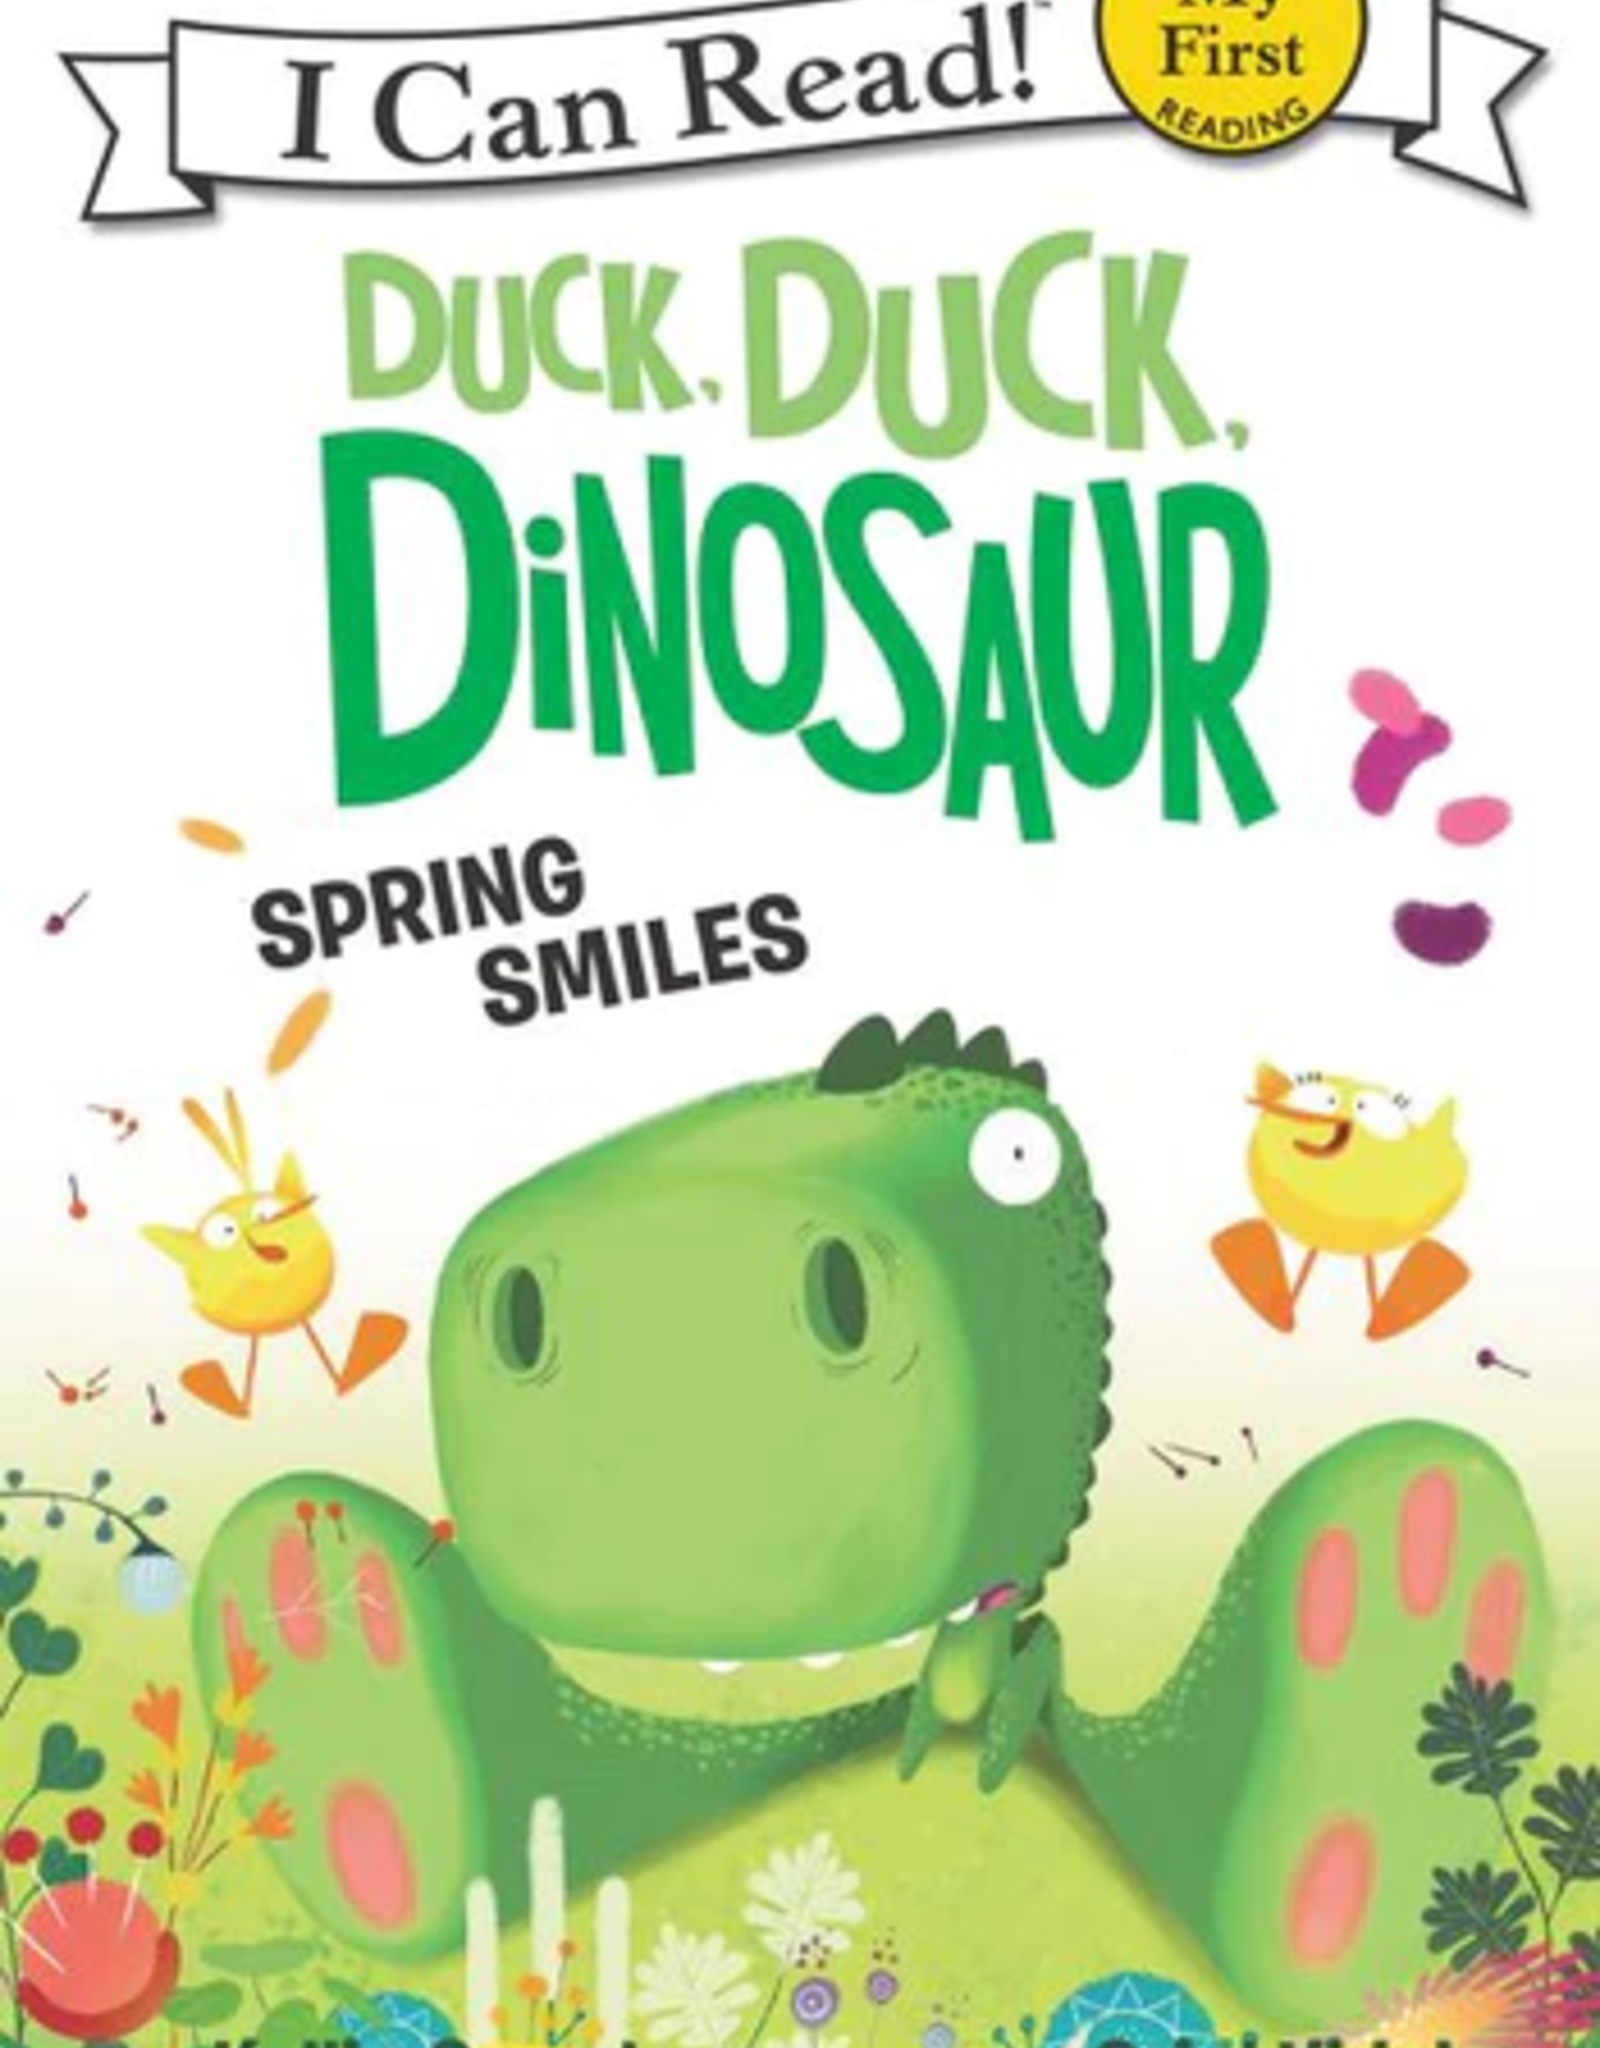 Harper Collins ICR Duck Duck Dinosaur Spring Smiles